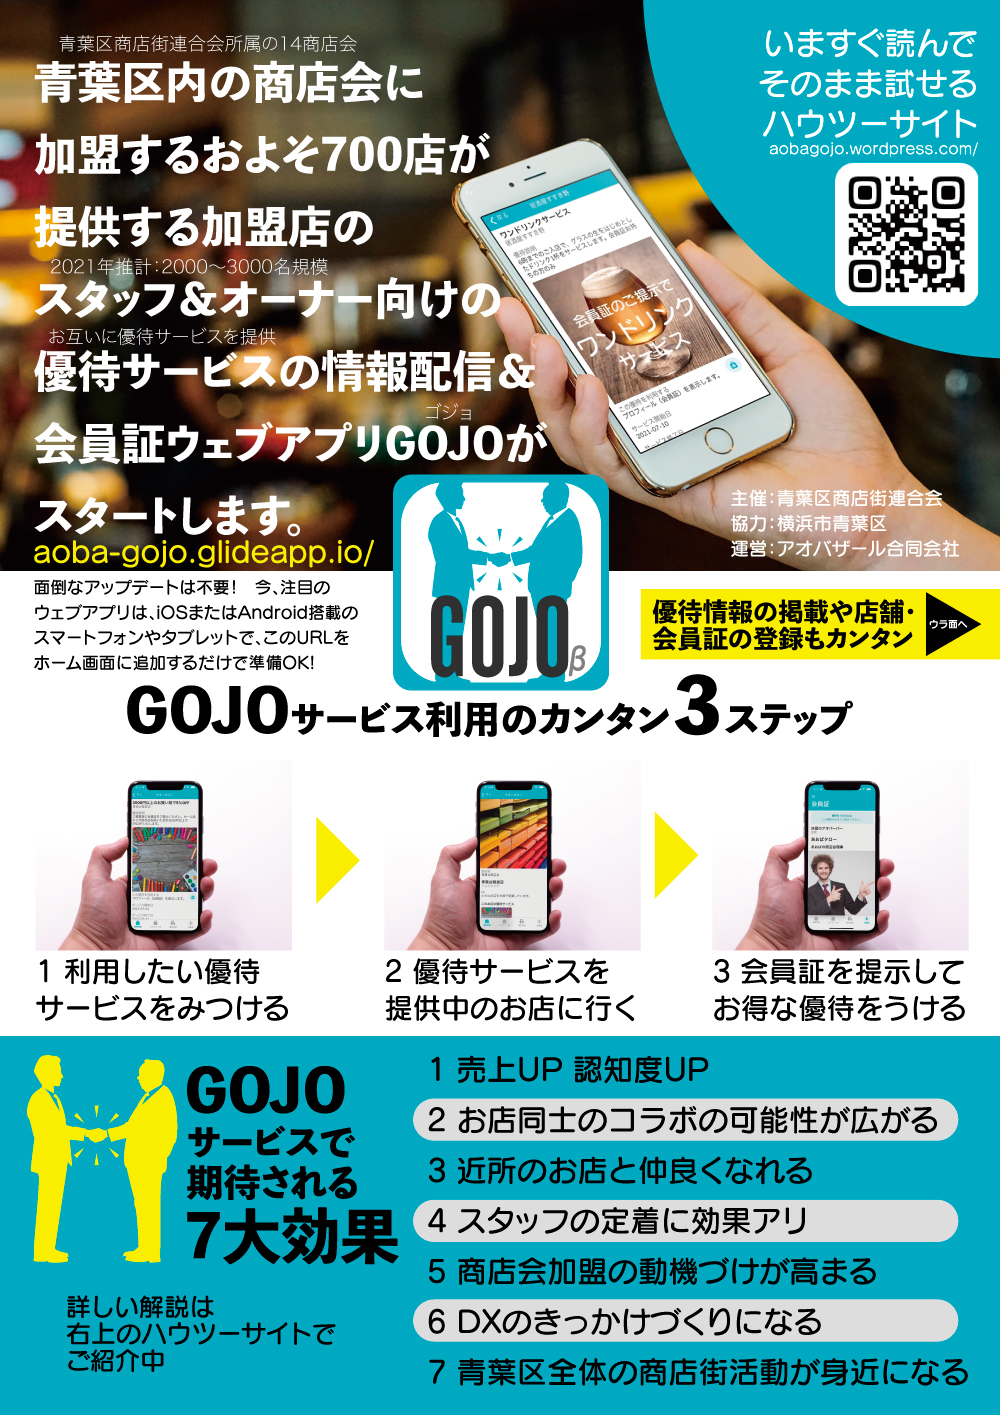 青葉区商店街連合会 会員向けアプリ GOJOを開発しました。